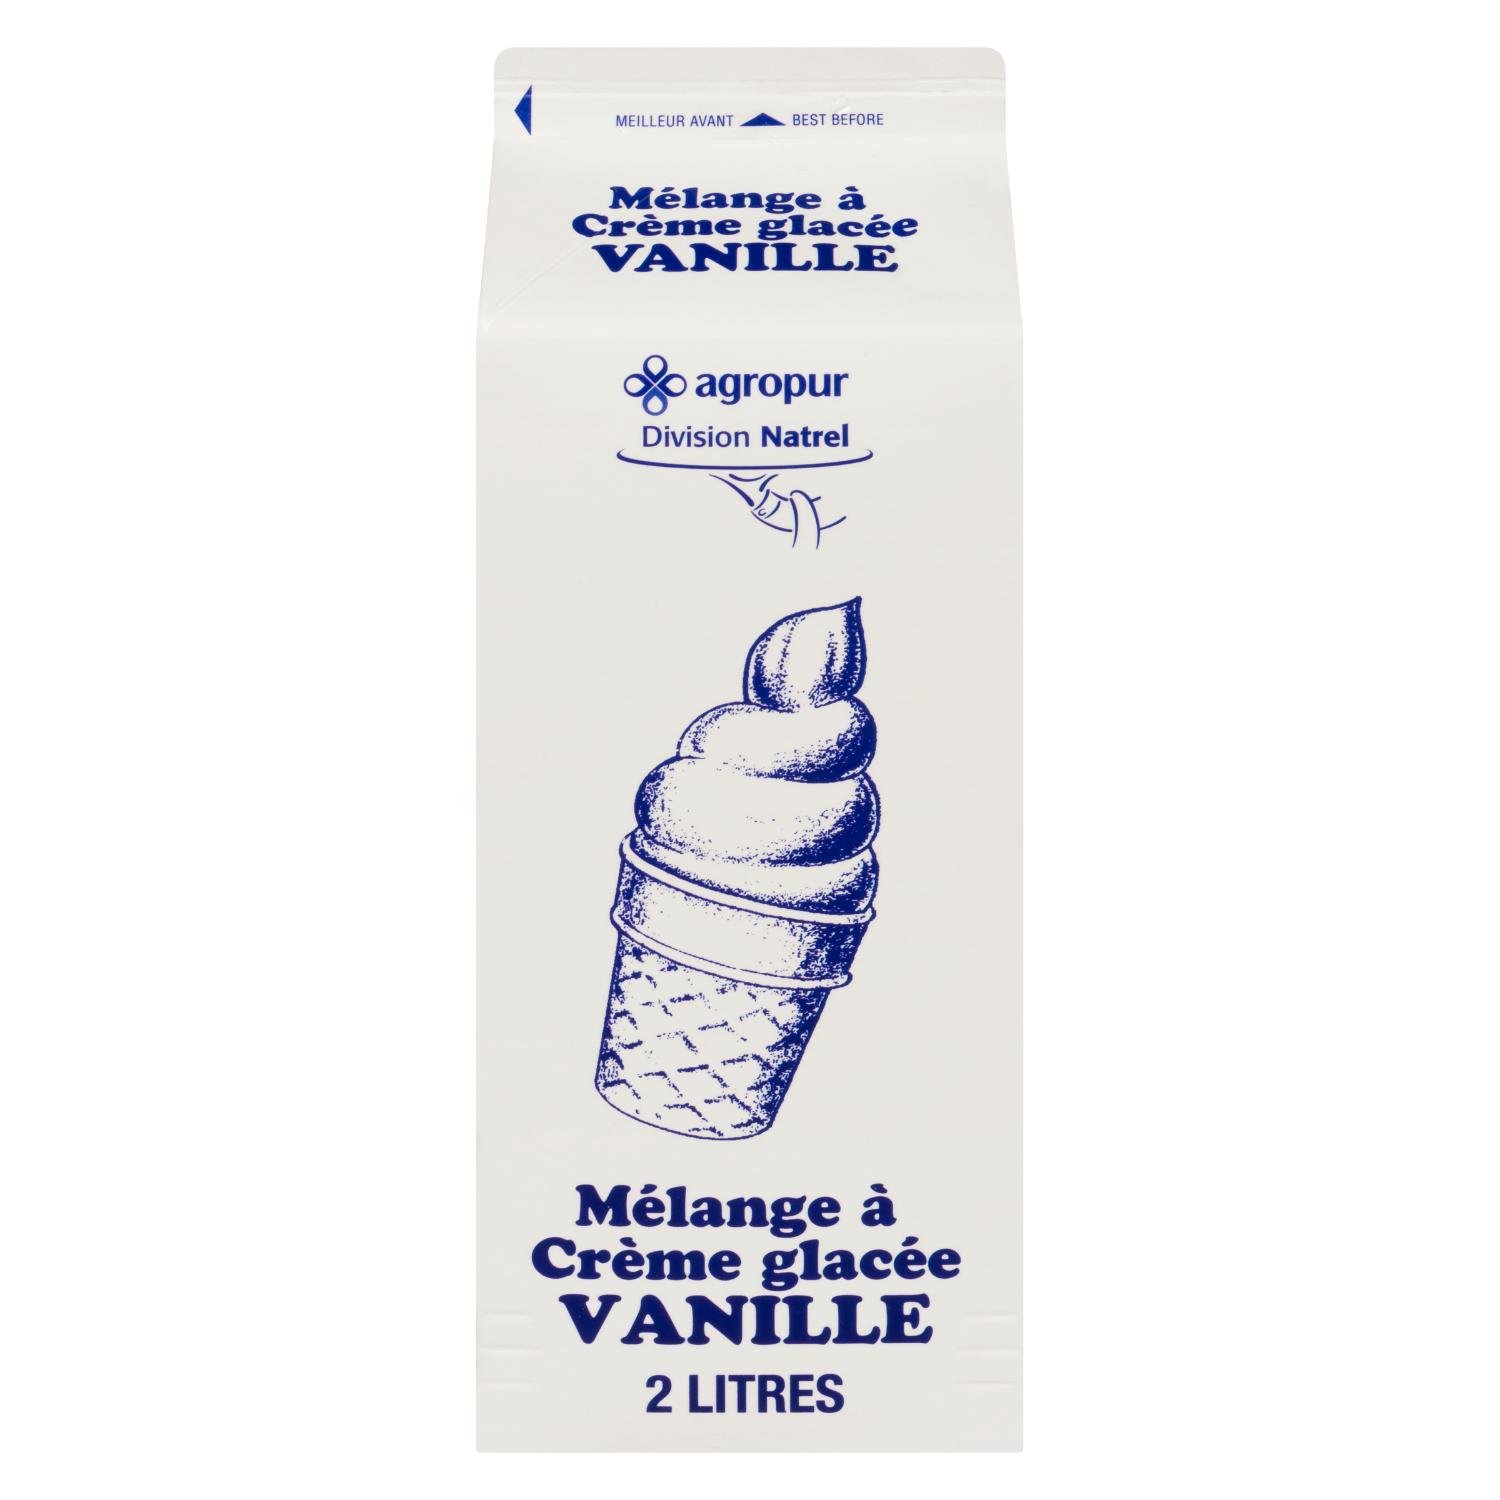 Crème glacée au yaourt et à la vanille - Malo